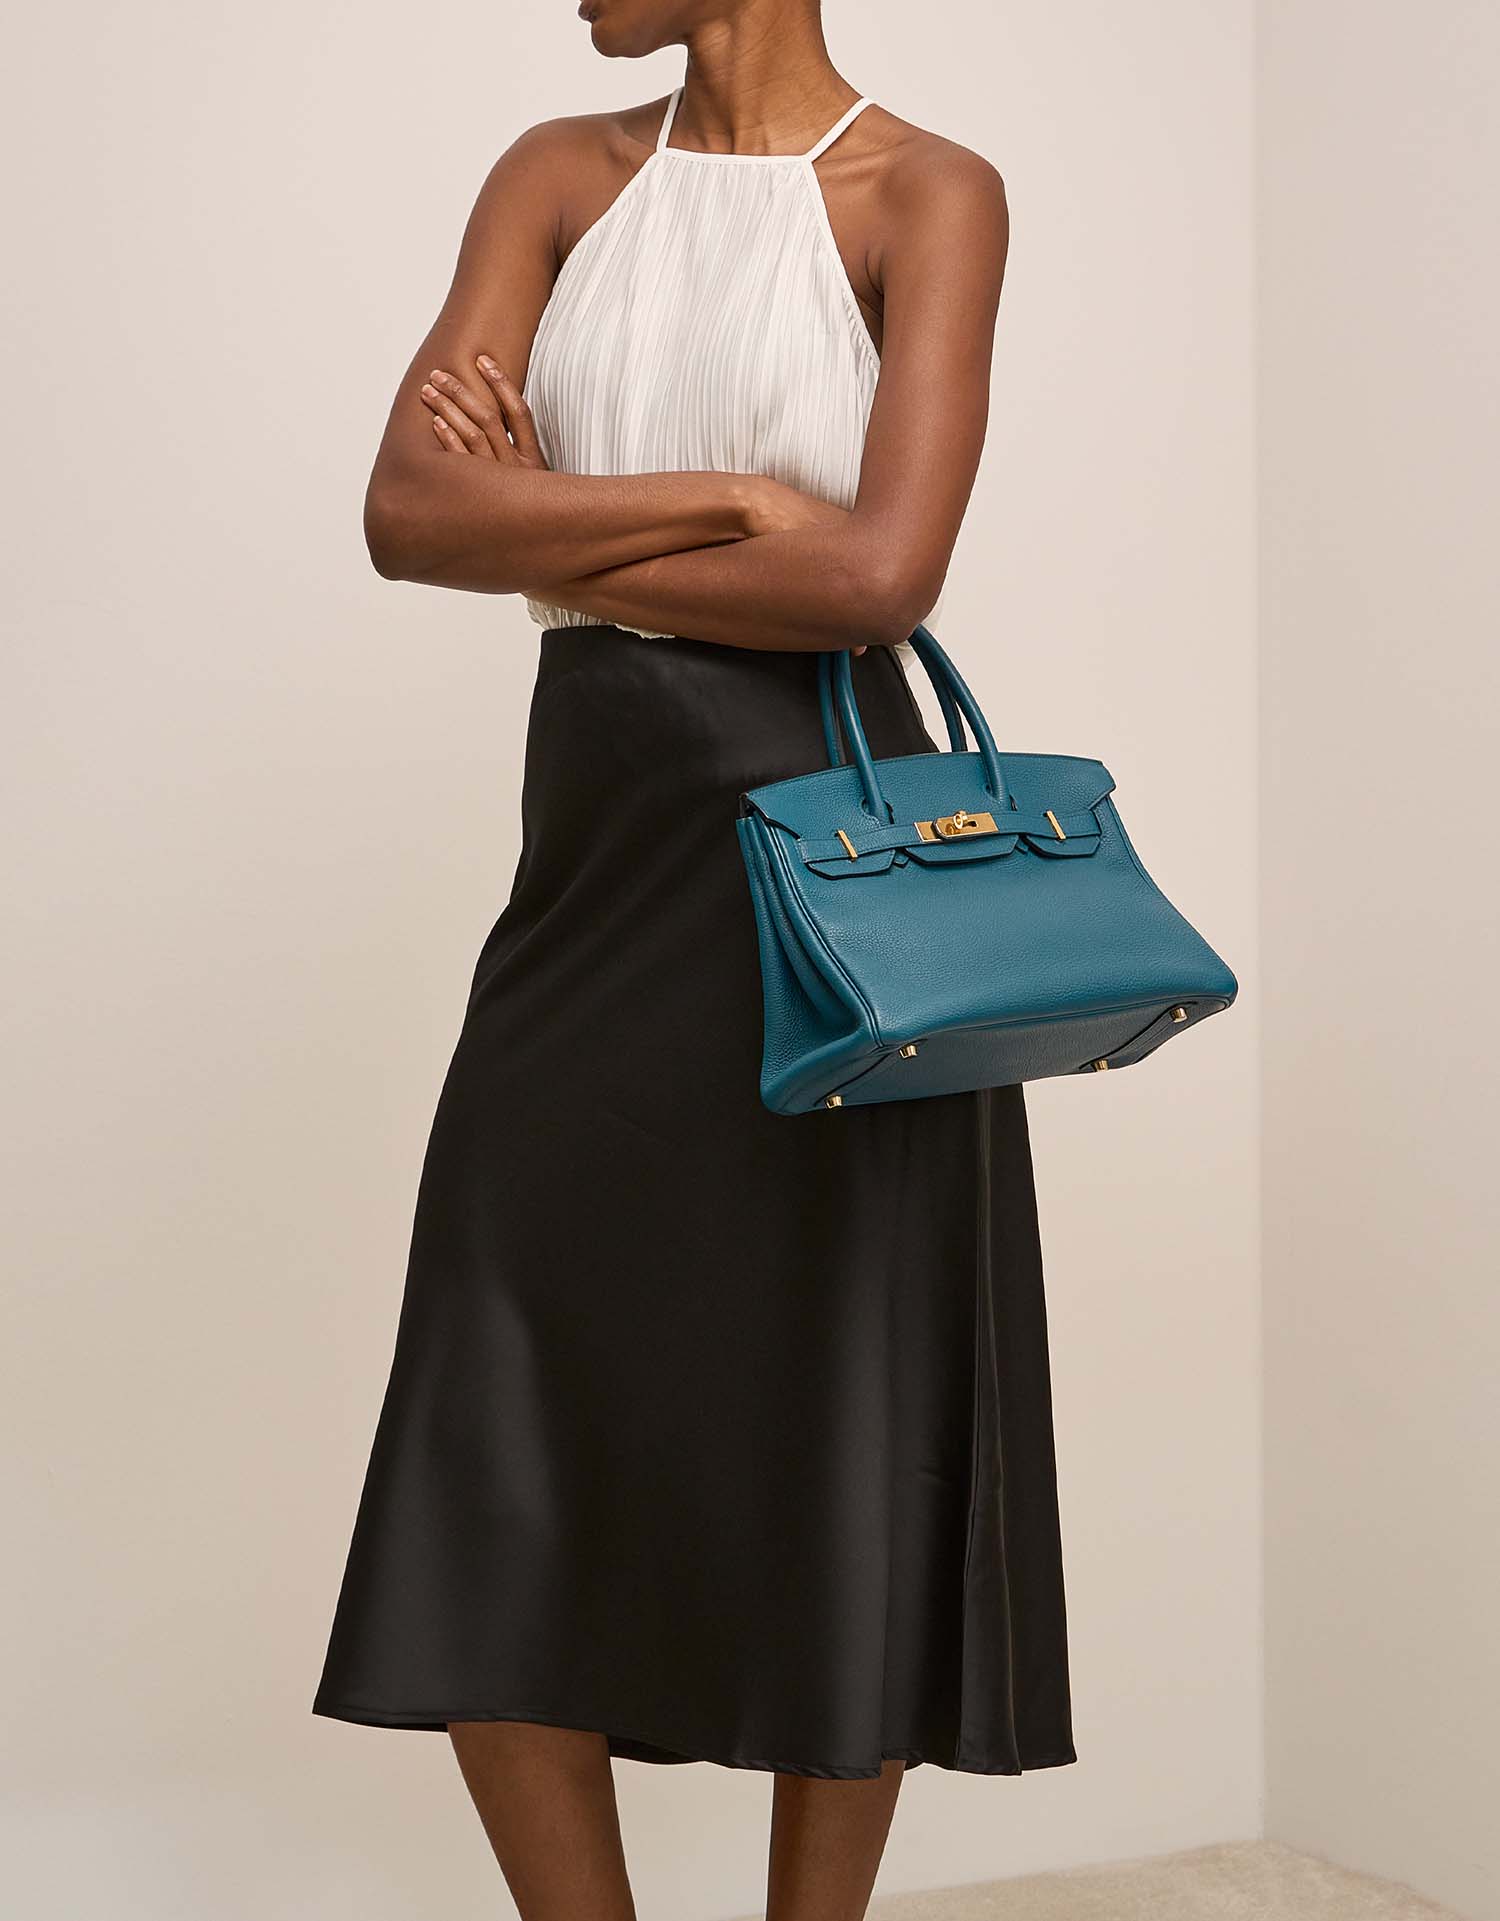 Hermès Birkin 30 Colvert Front on Model | Verkaufen Sie Ihre Designer-Tasche auf Saclab.com